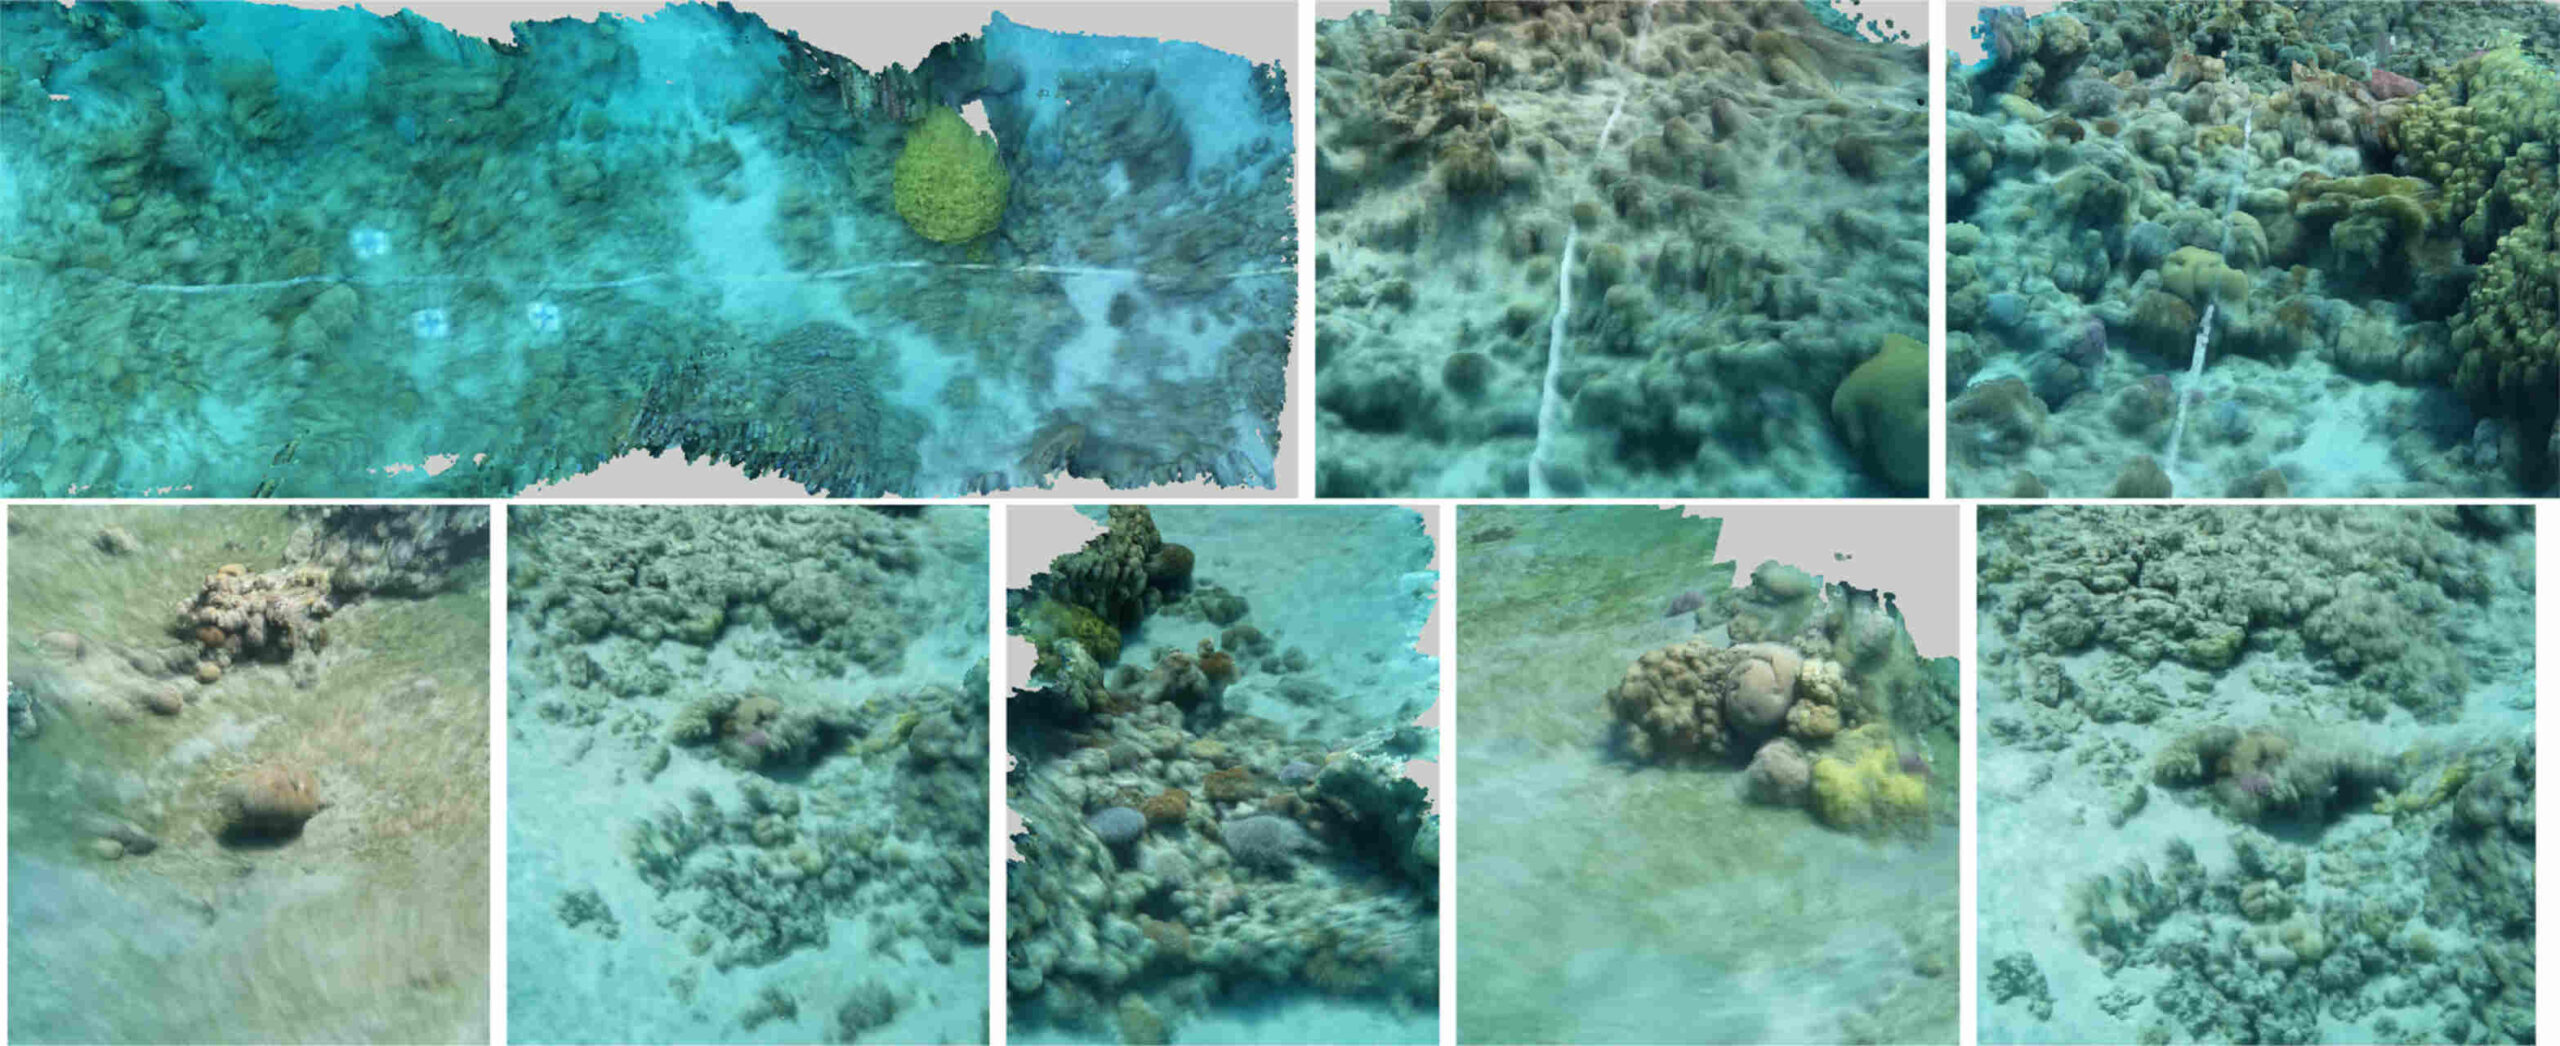 Conservació del corall: el paper de la IA